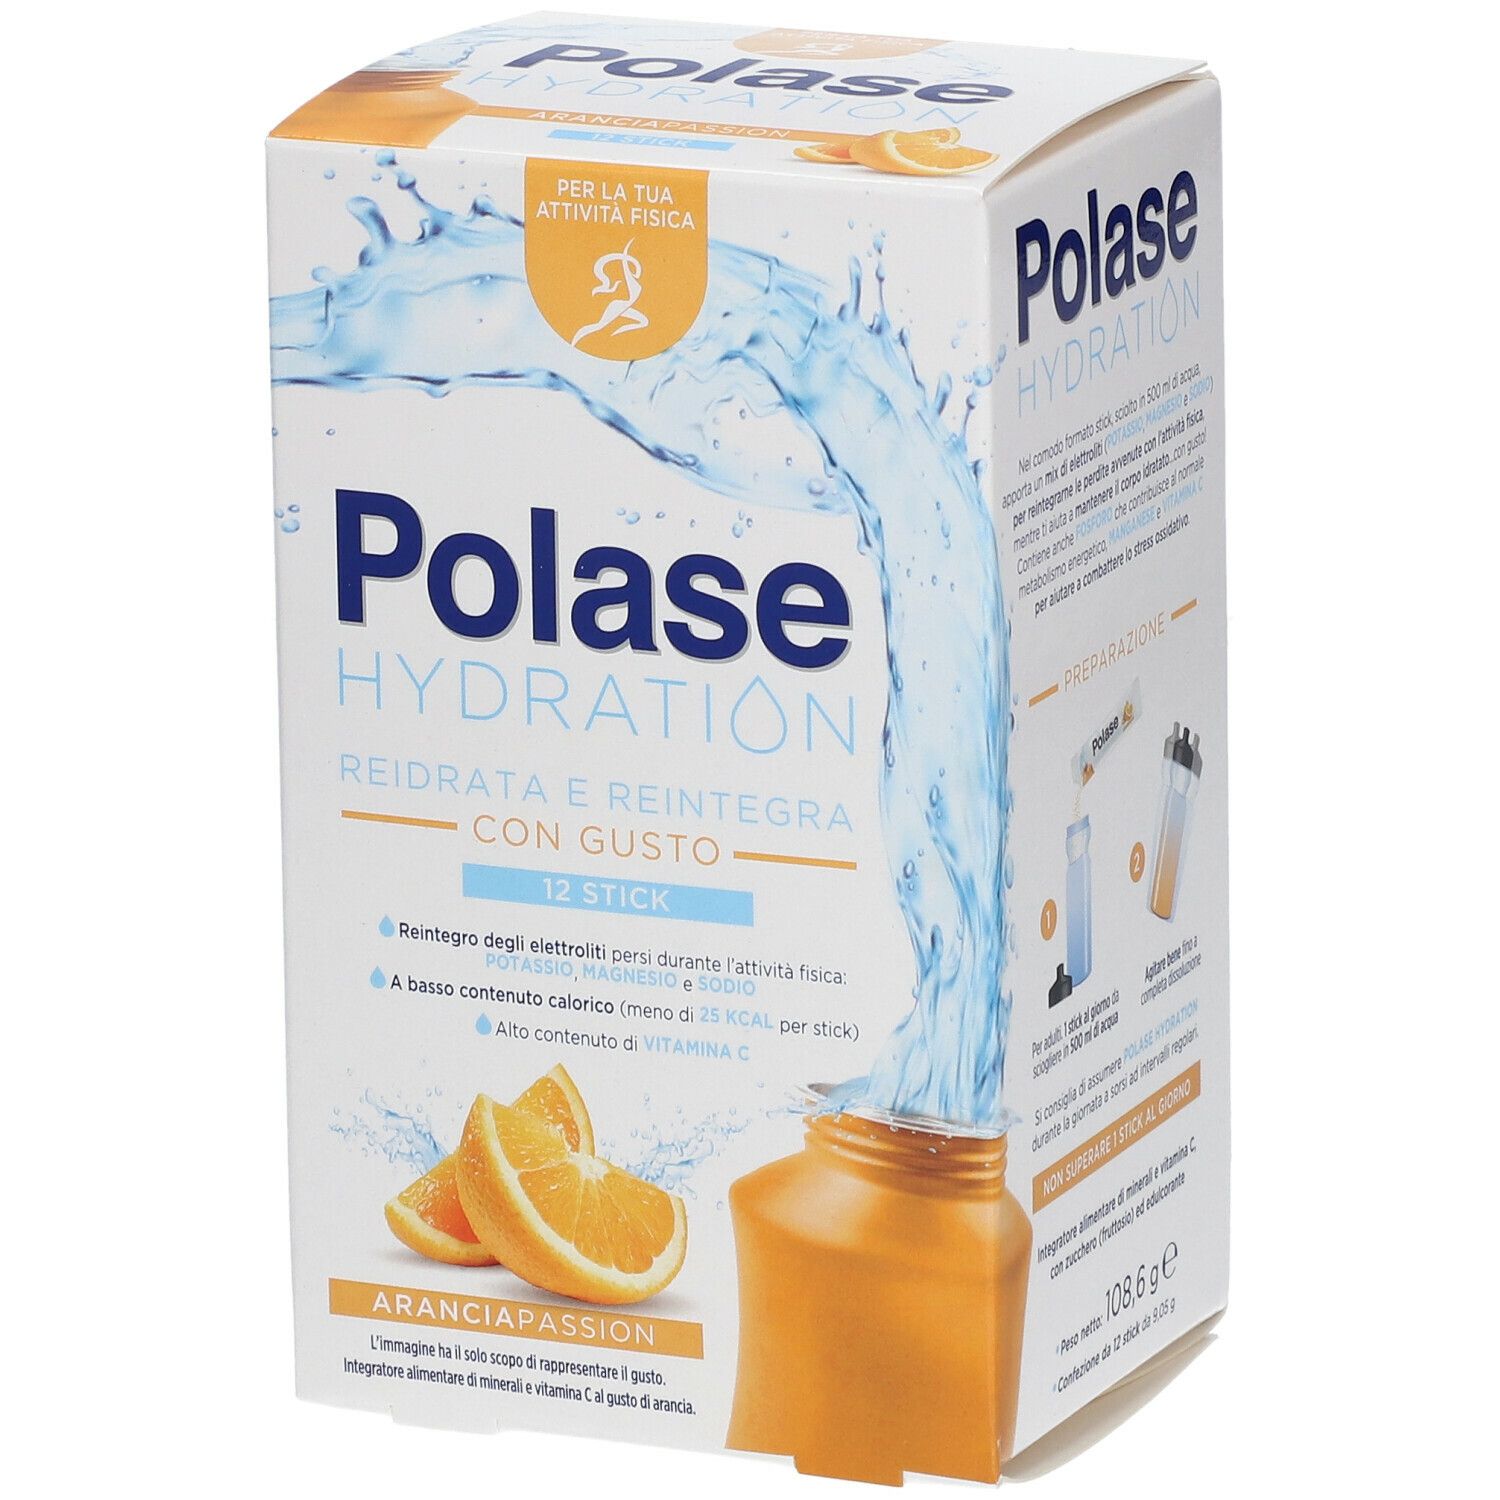 Image of Polase Hydration Reidrata e Reintegra